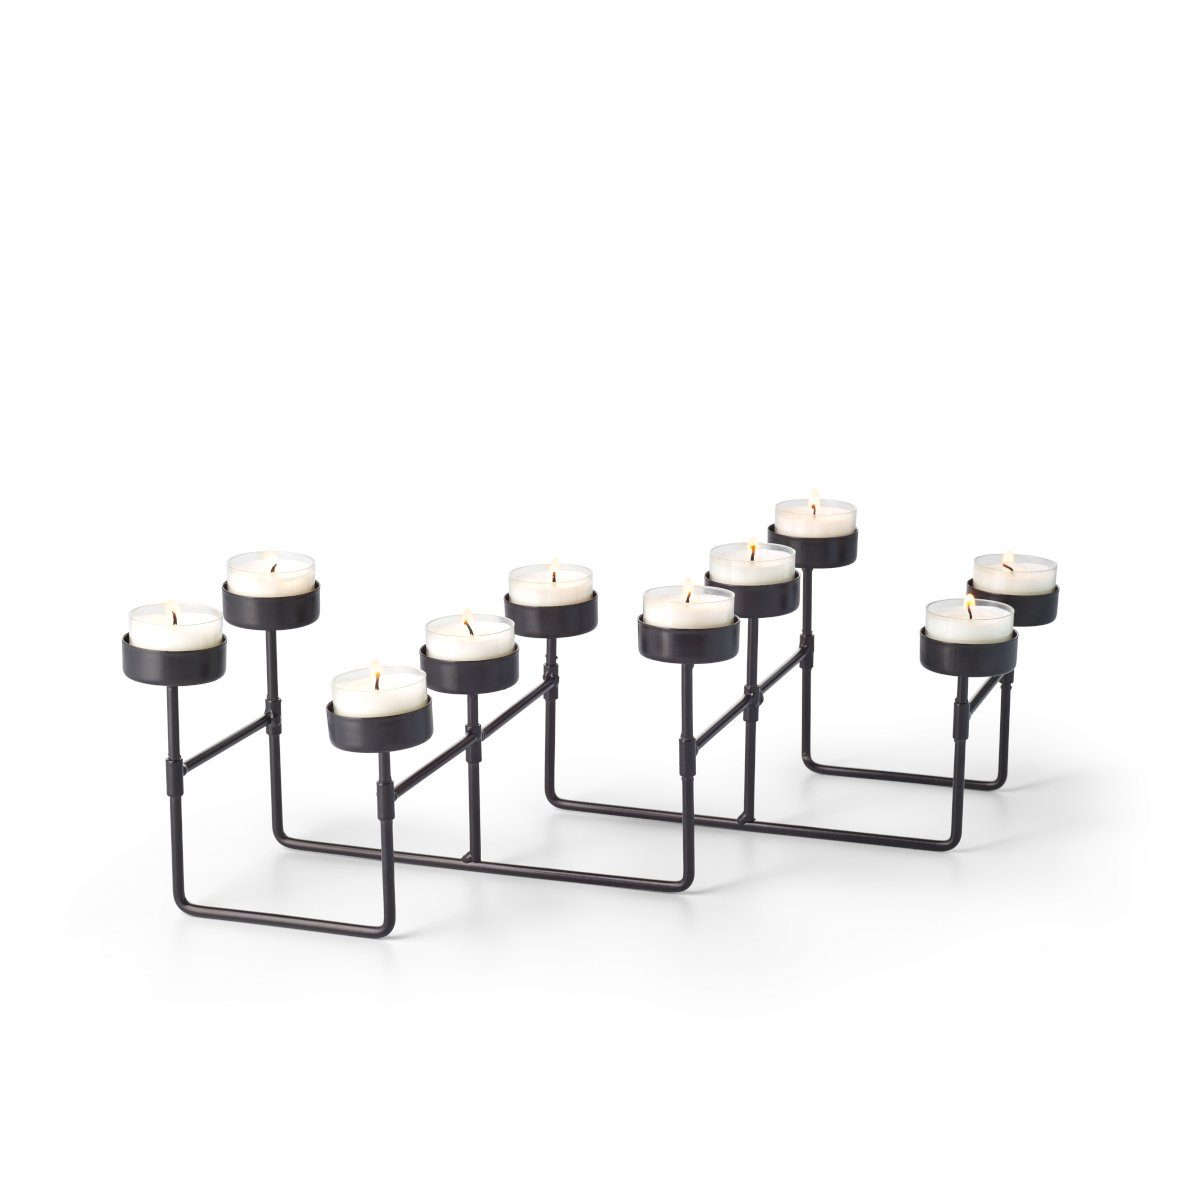 PHILIPPI Teelichthalter Teelichthalter ausziehbar LAB, Länge ausziehbar bis 60 cm